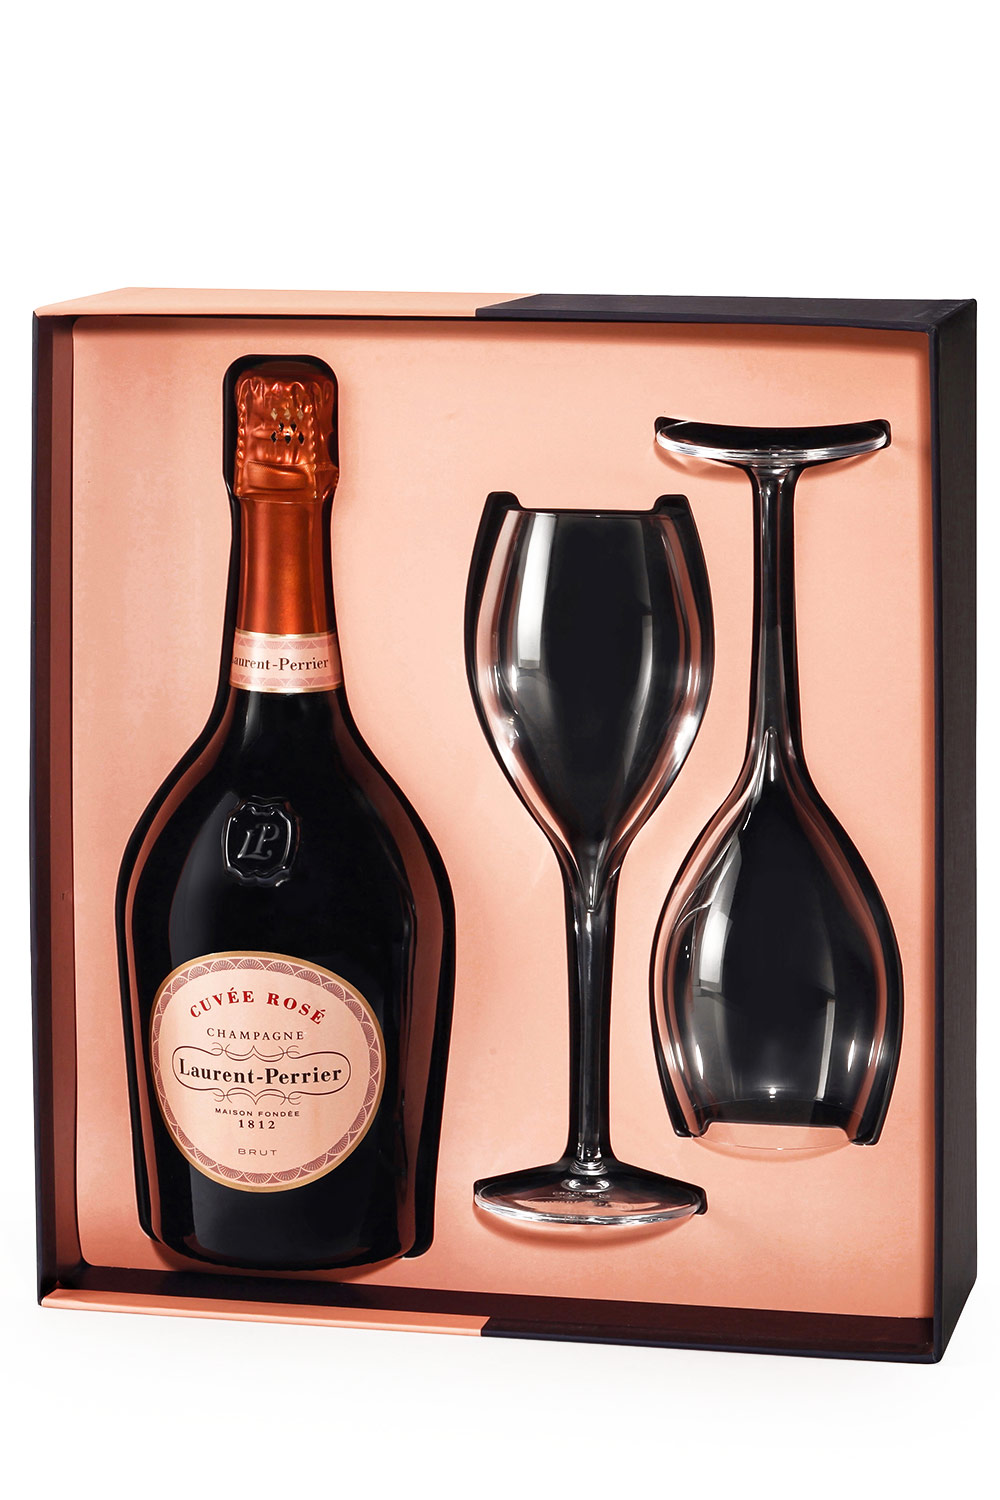 Cuvée | - Online Vini Senti bei Rosé 2 Box Laurent-Perrier Weine aus Italien kaufen Champagner Gläser mit